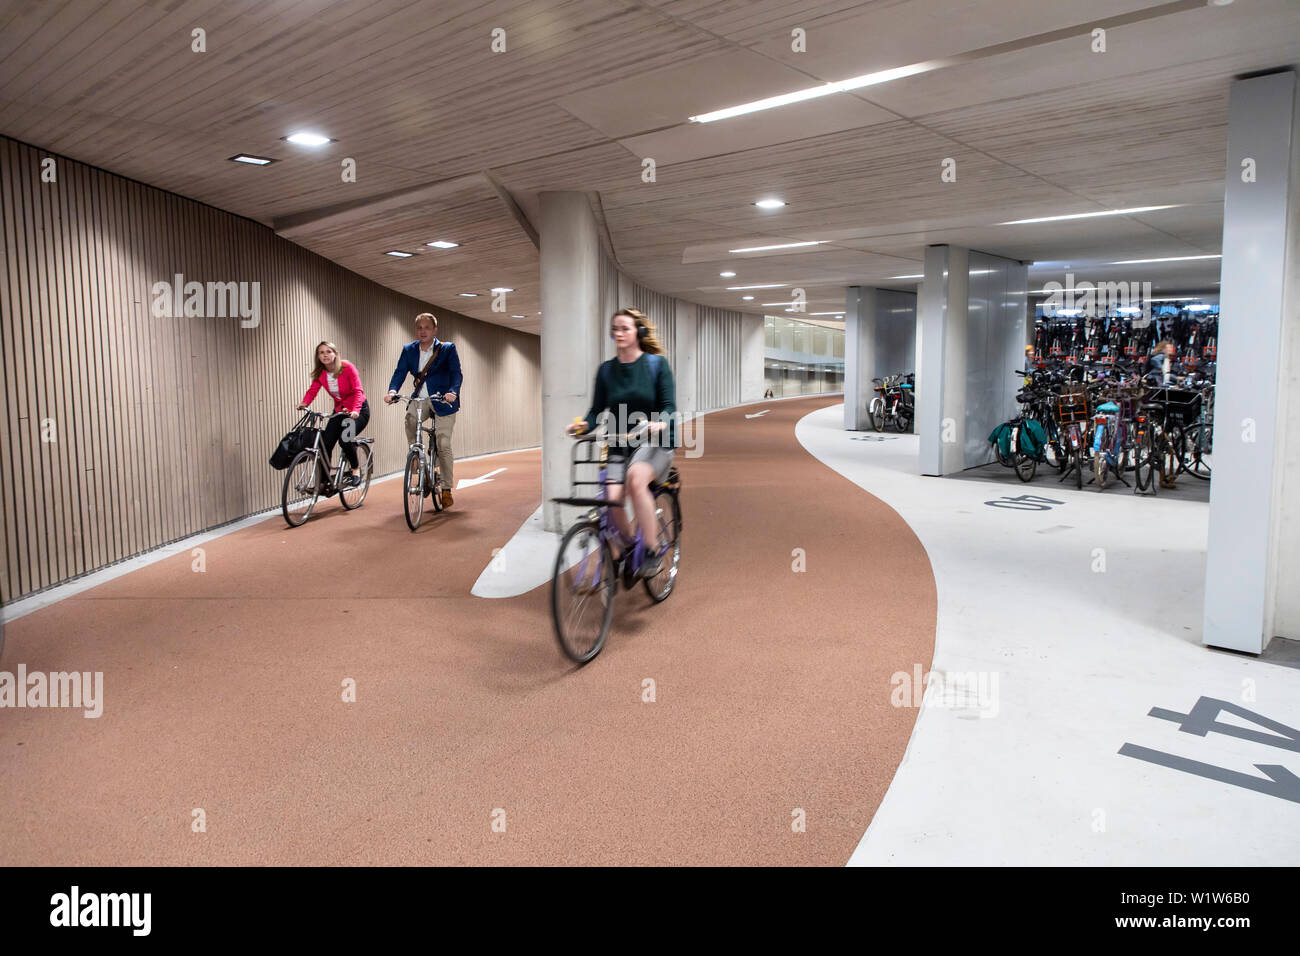 Parcheggio bici garage a Utrecht, nei Paesi Bassi, con oltre 13.000 spazi di parcheggio, il più grande parcheggio garage per biciclette in tutto il mondo, presso la centrale di Foto Stock